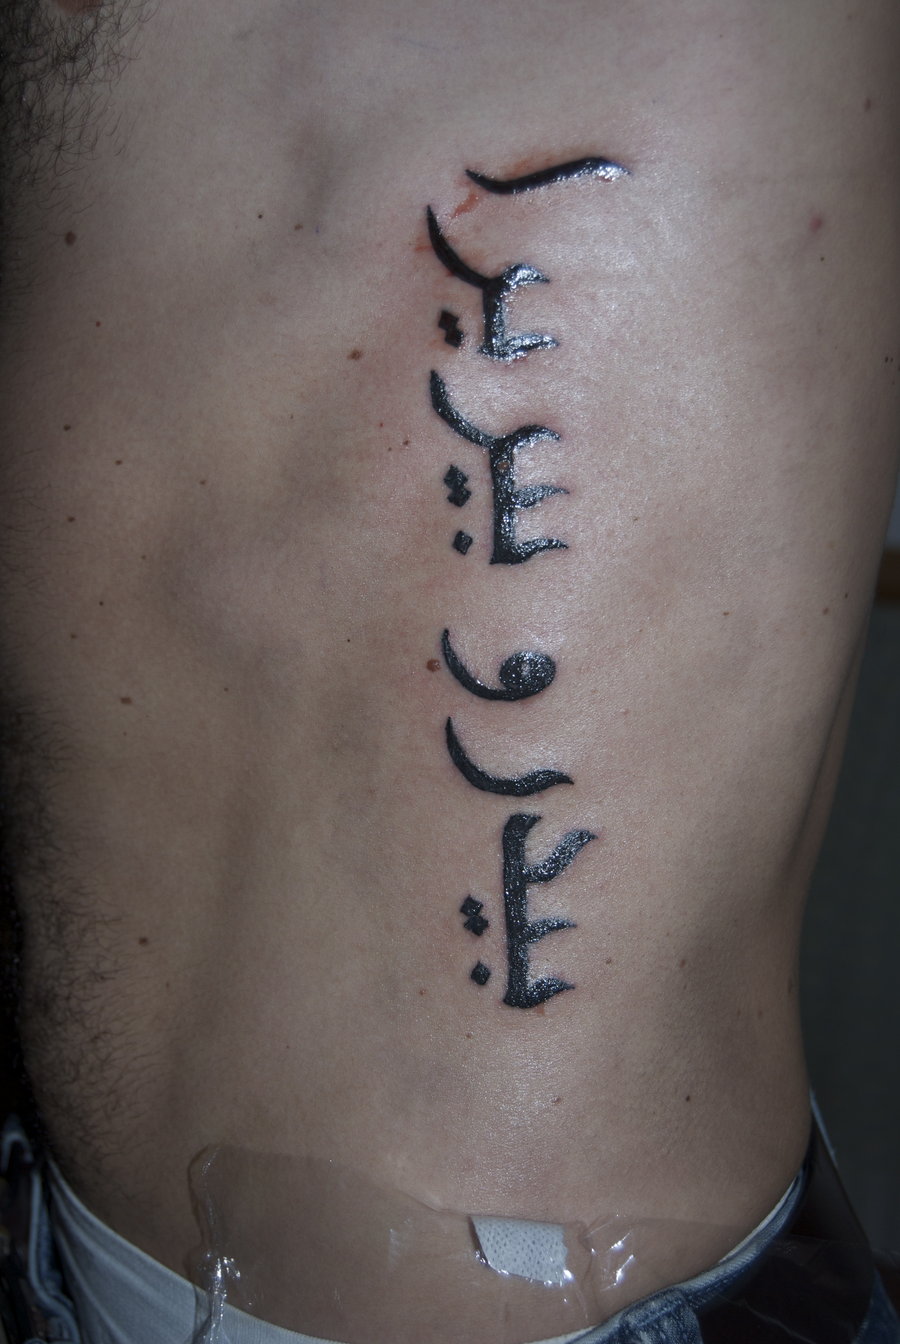 Arabic tattoo design, ribs tattoo ideas for man